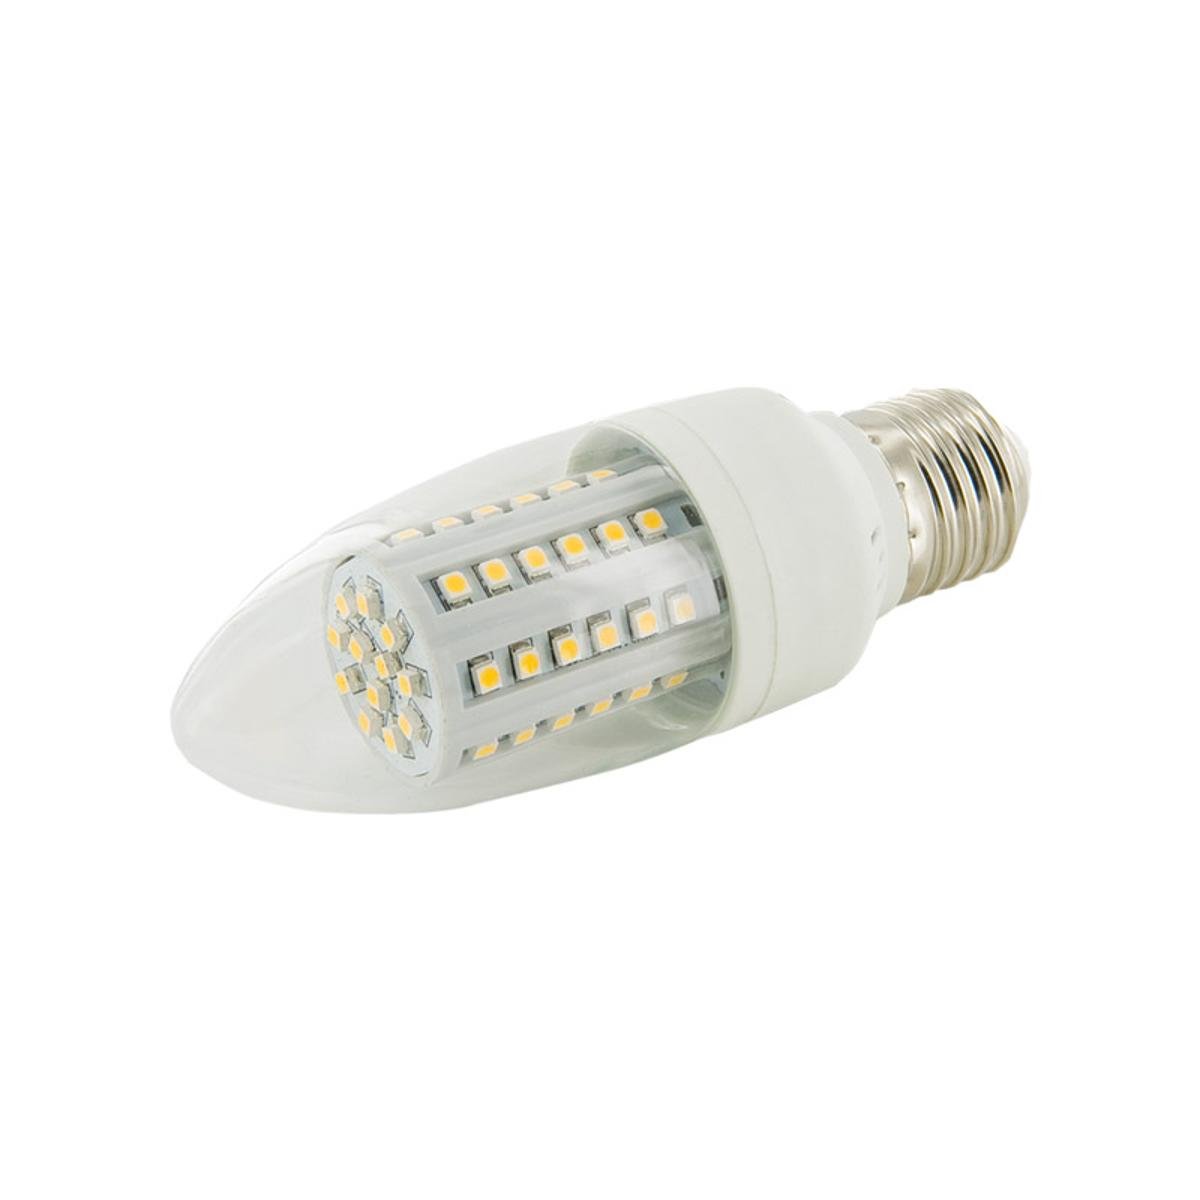 Whitenergy Żarówka LED E27 60xSMD C35 3.5W 230V ciepła biała transparentna 8860